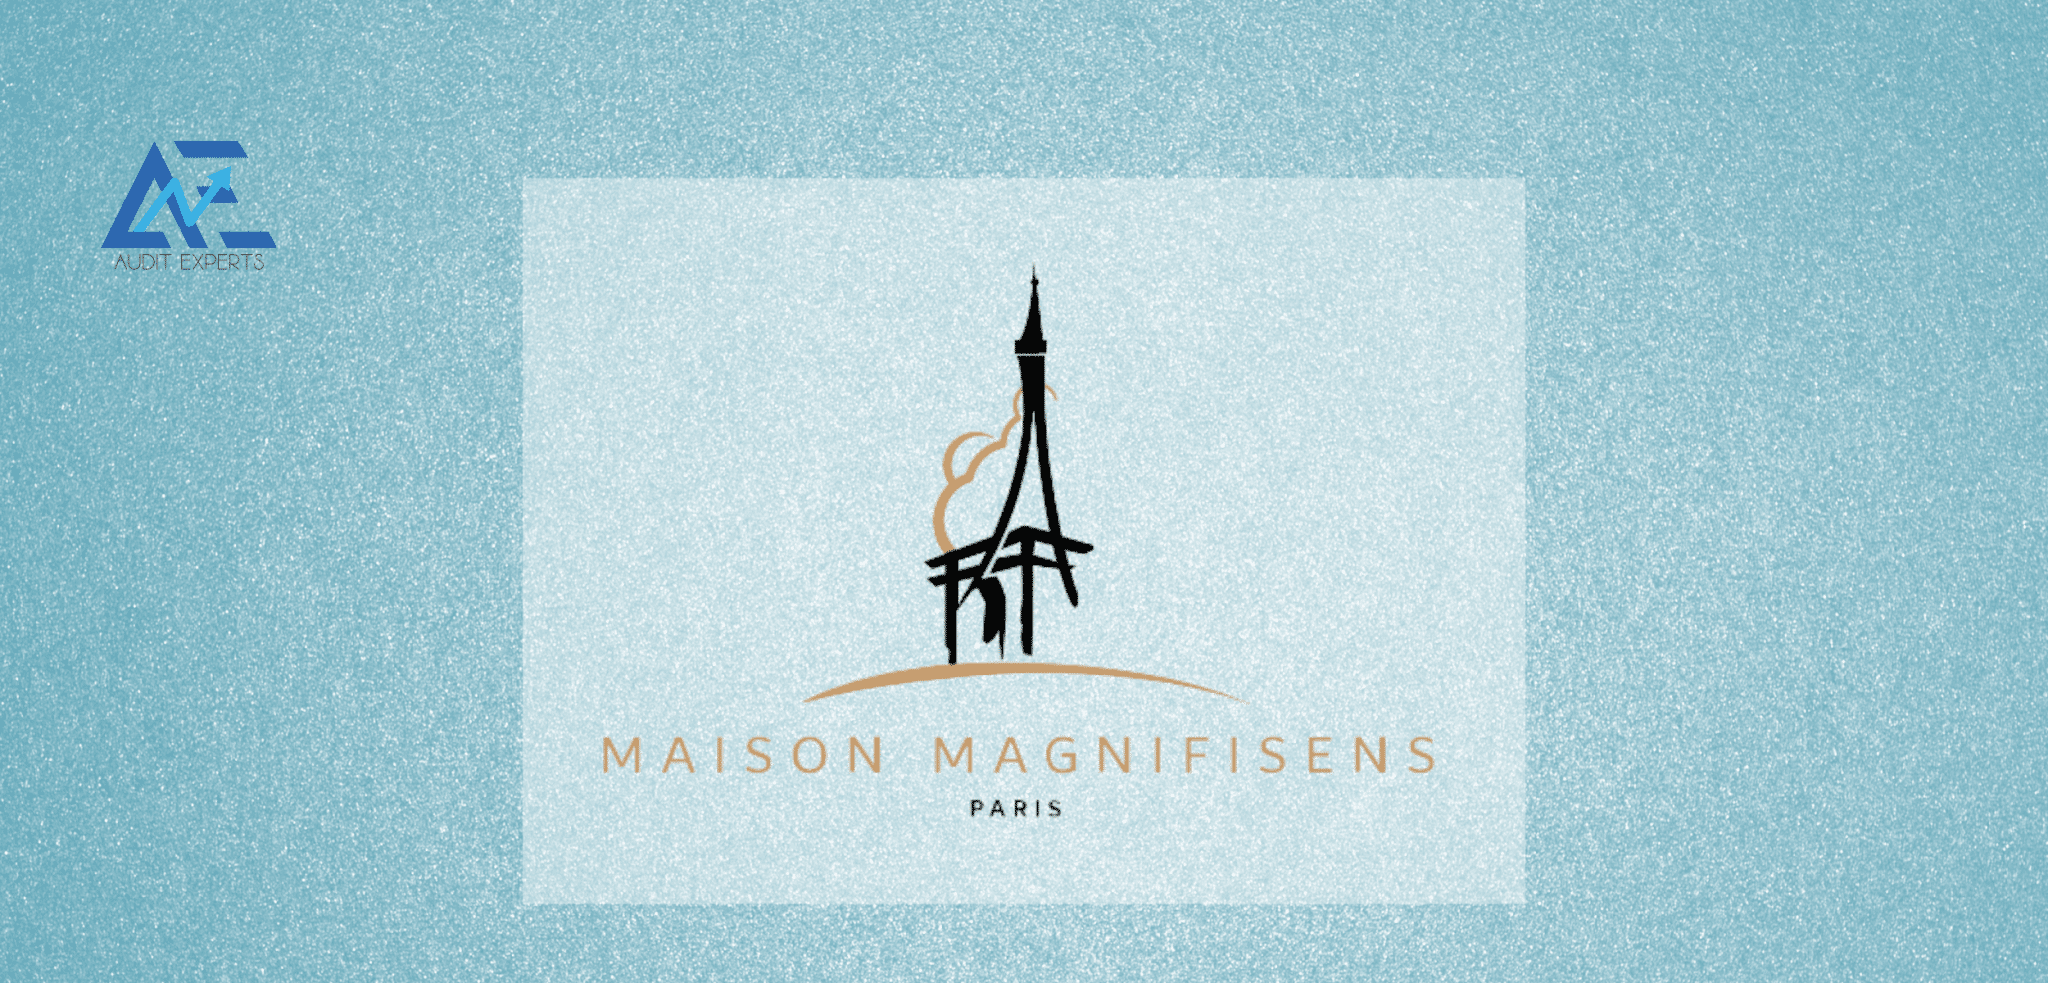 Lire la suite à propos de l’article Maison MAGNIFISENS et son expert-comptable à Paris 8e – Audit Experts